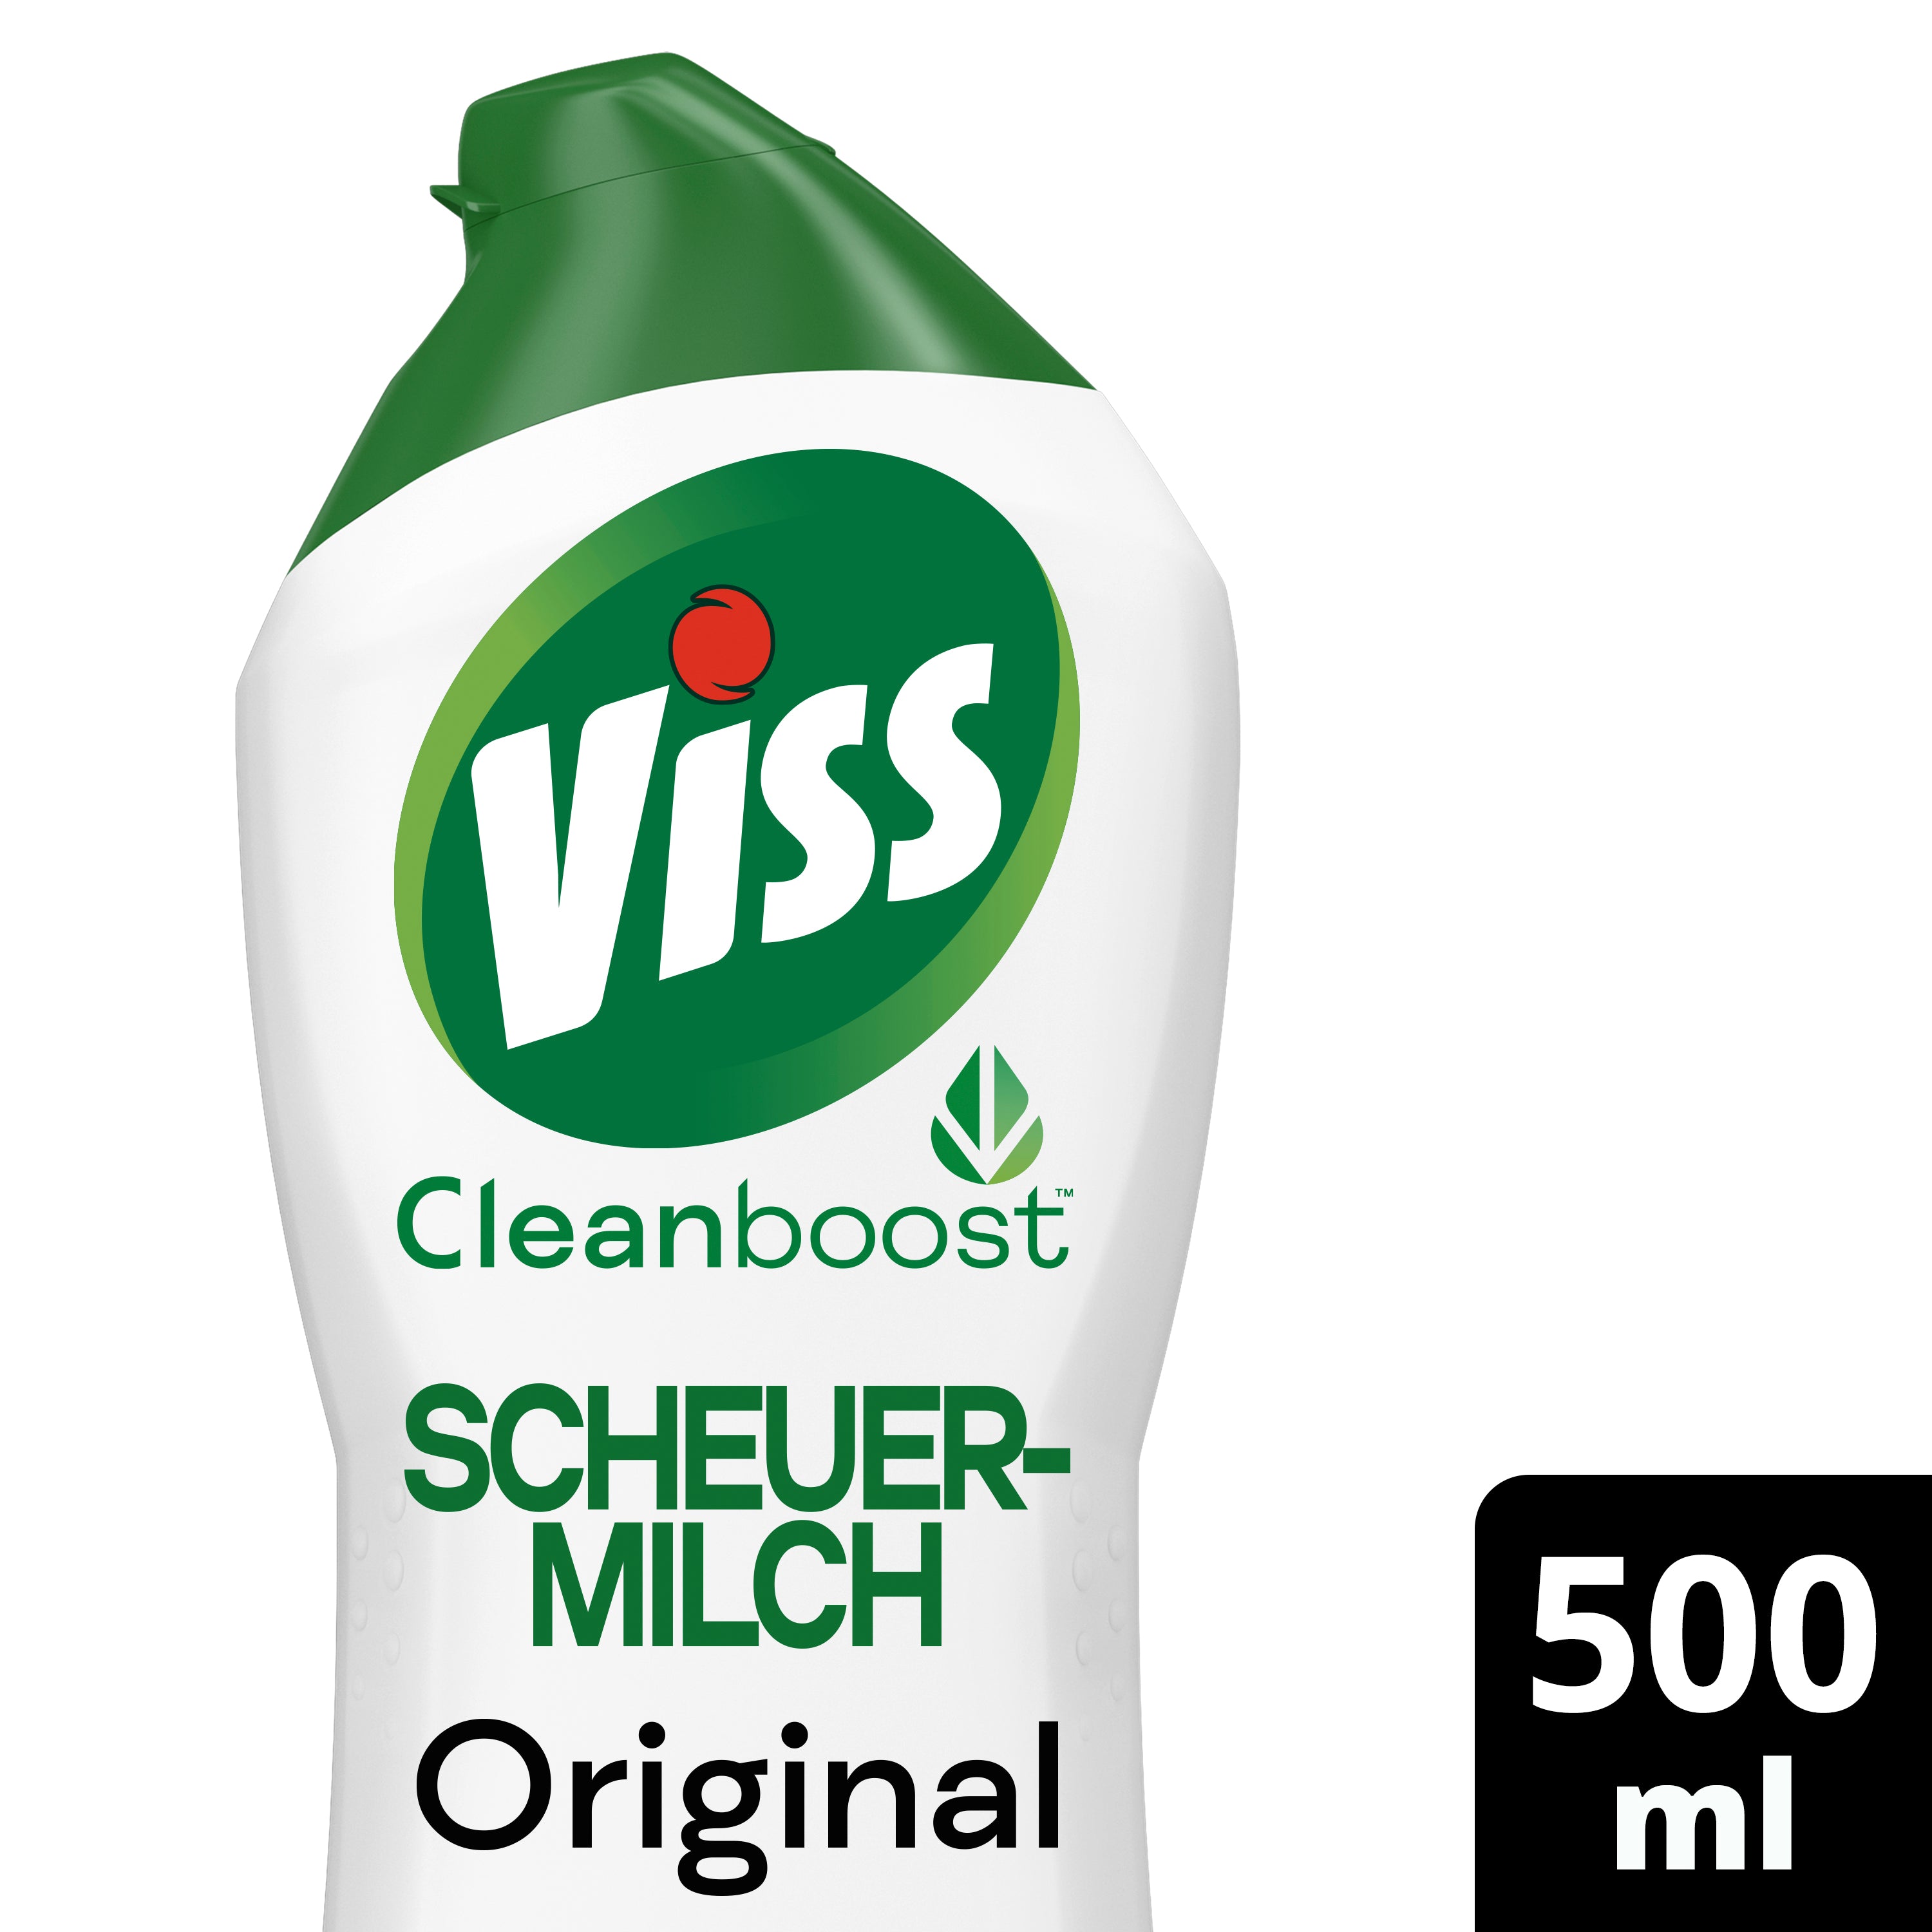 Viss Scheuermilch Original 500 ml